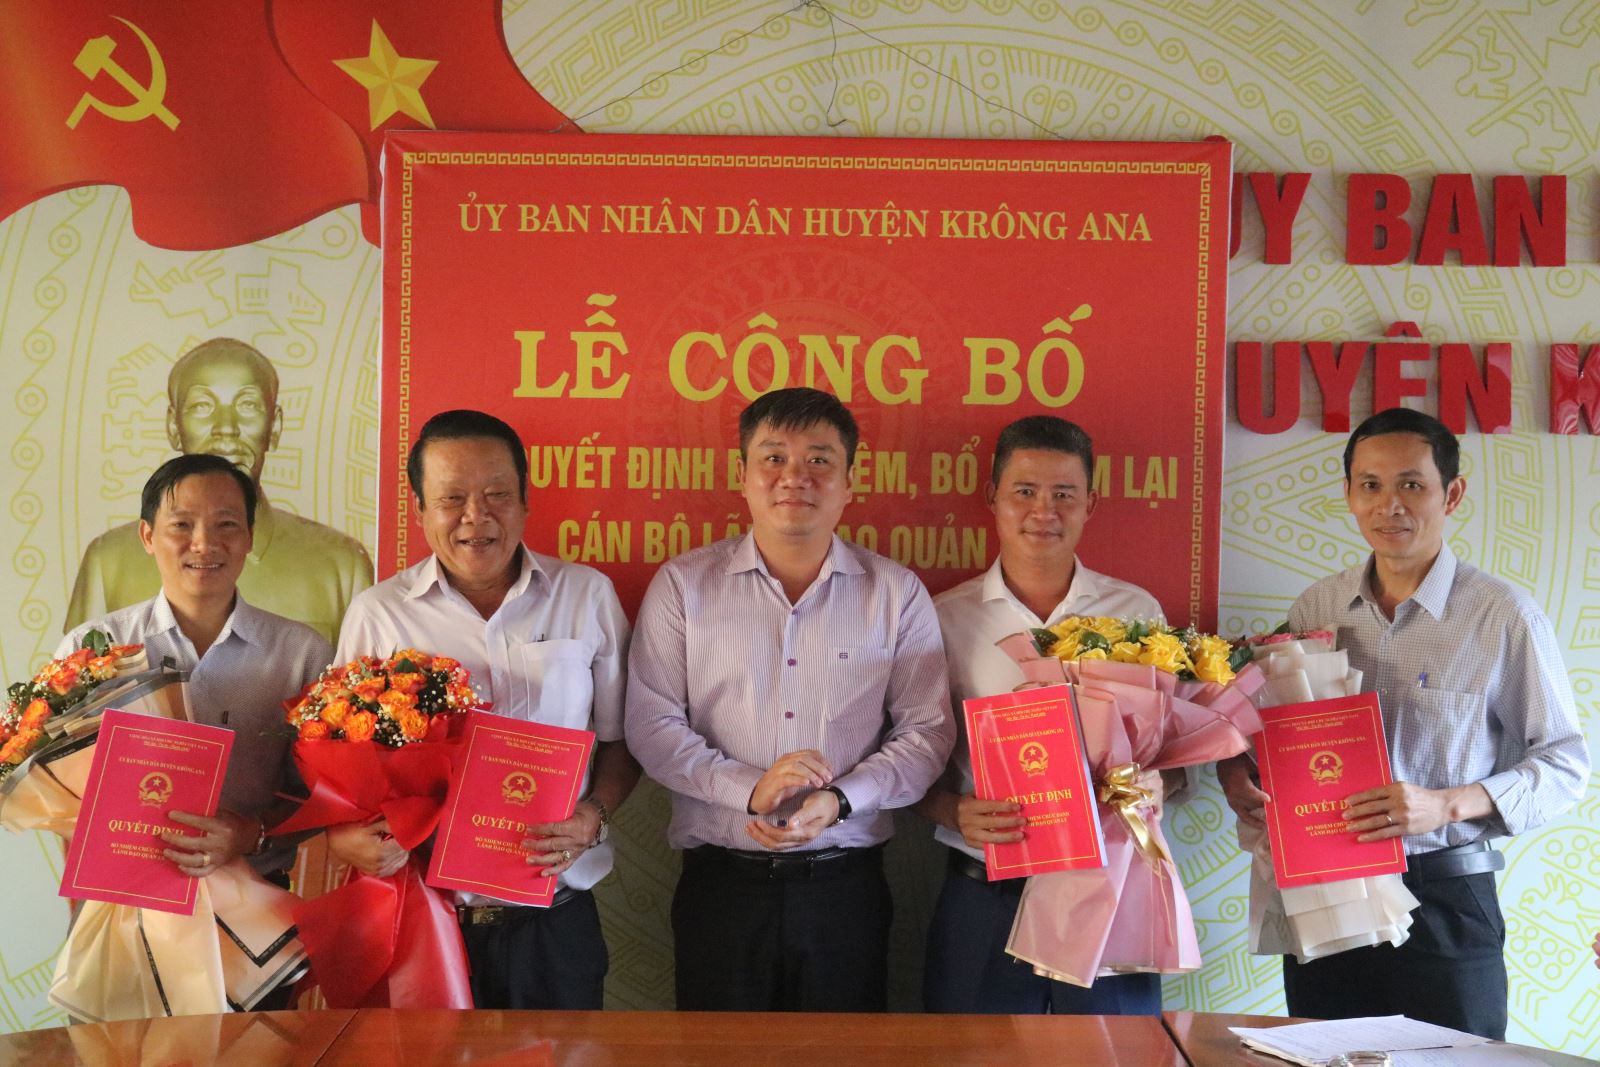 UBND huyện Krông Ana công bố quyết định về công tác cán bộ